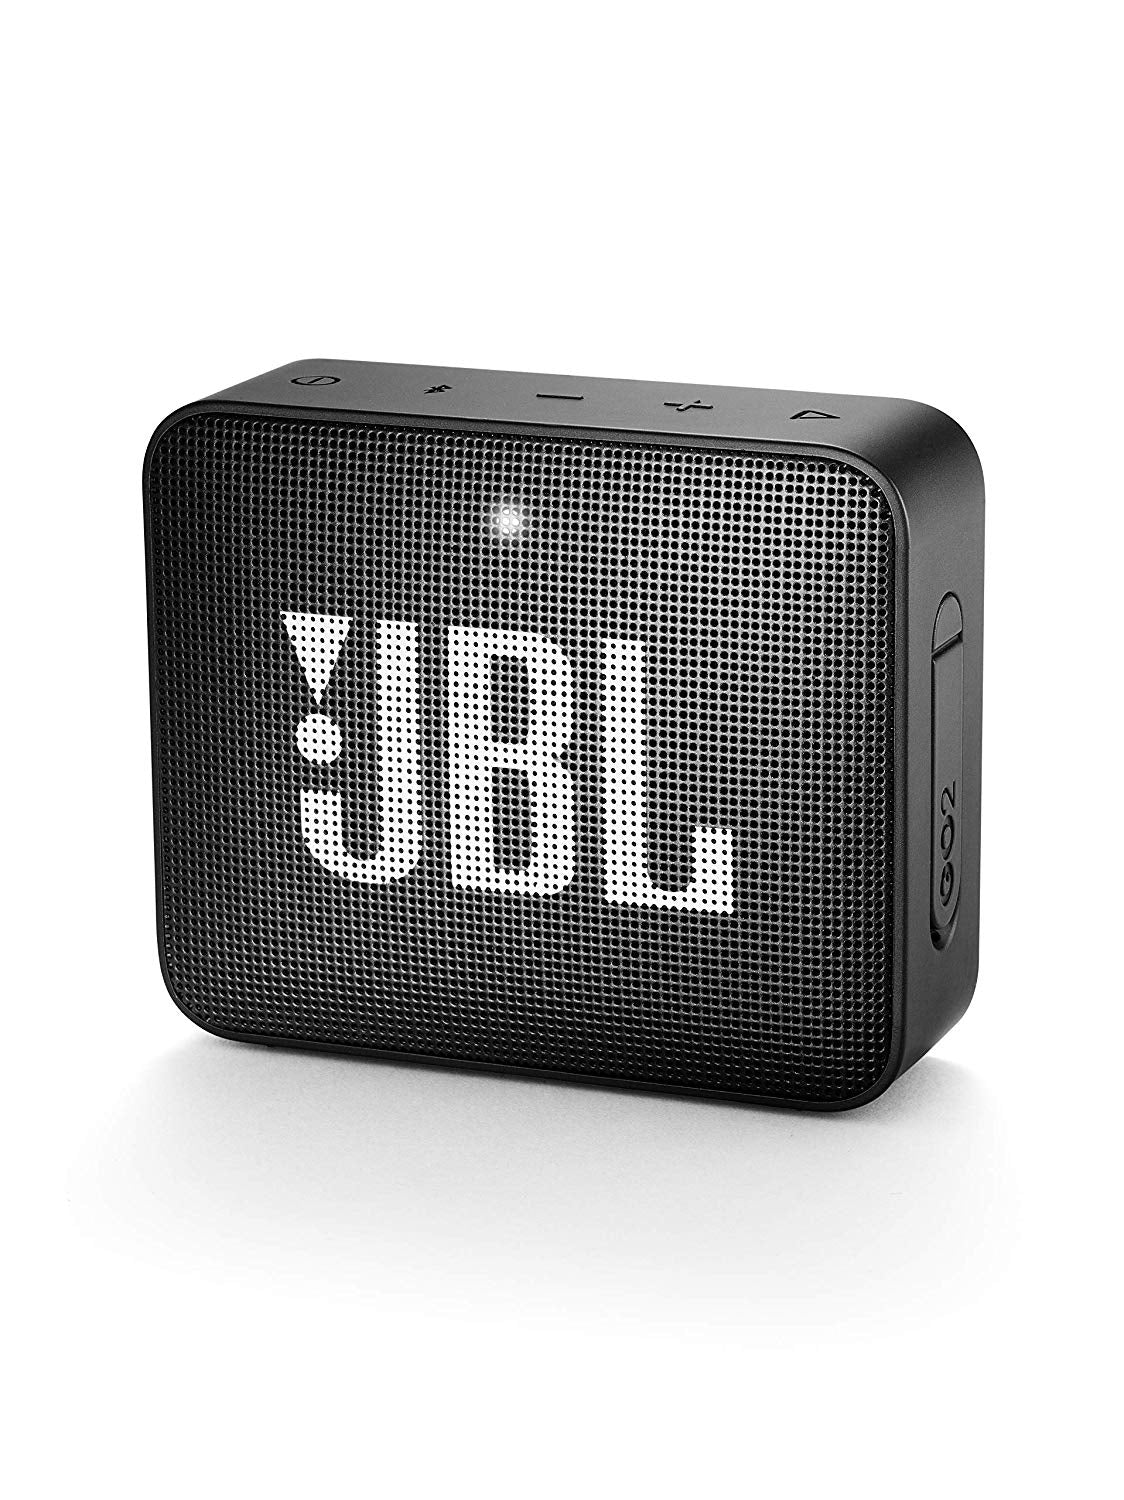 JBL GO 2 Portable Bluetooth Waterproof Speaker - Black (Certified Refurbished)